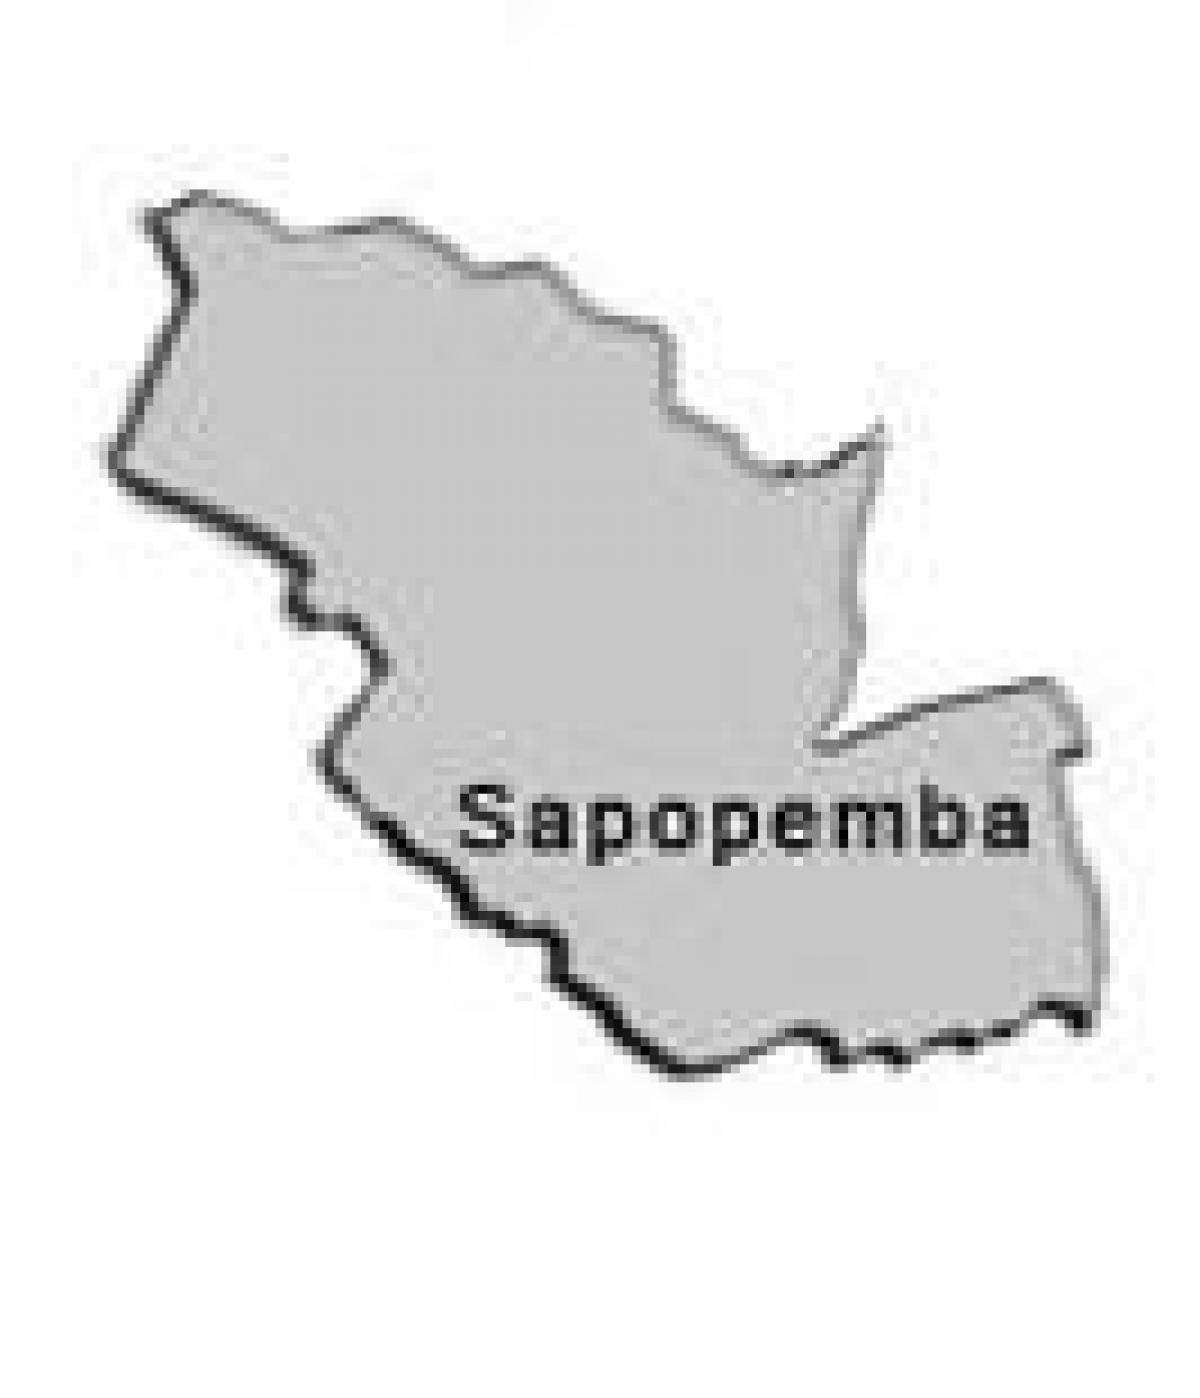 Kaart van Sapopembra sub-prefektuur